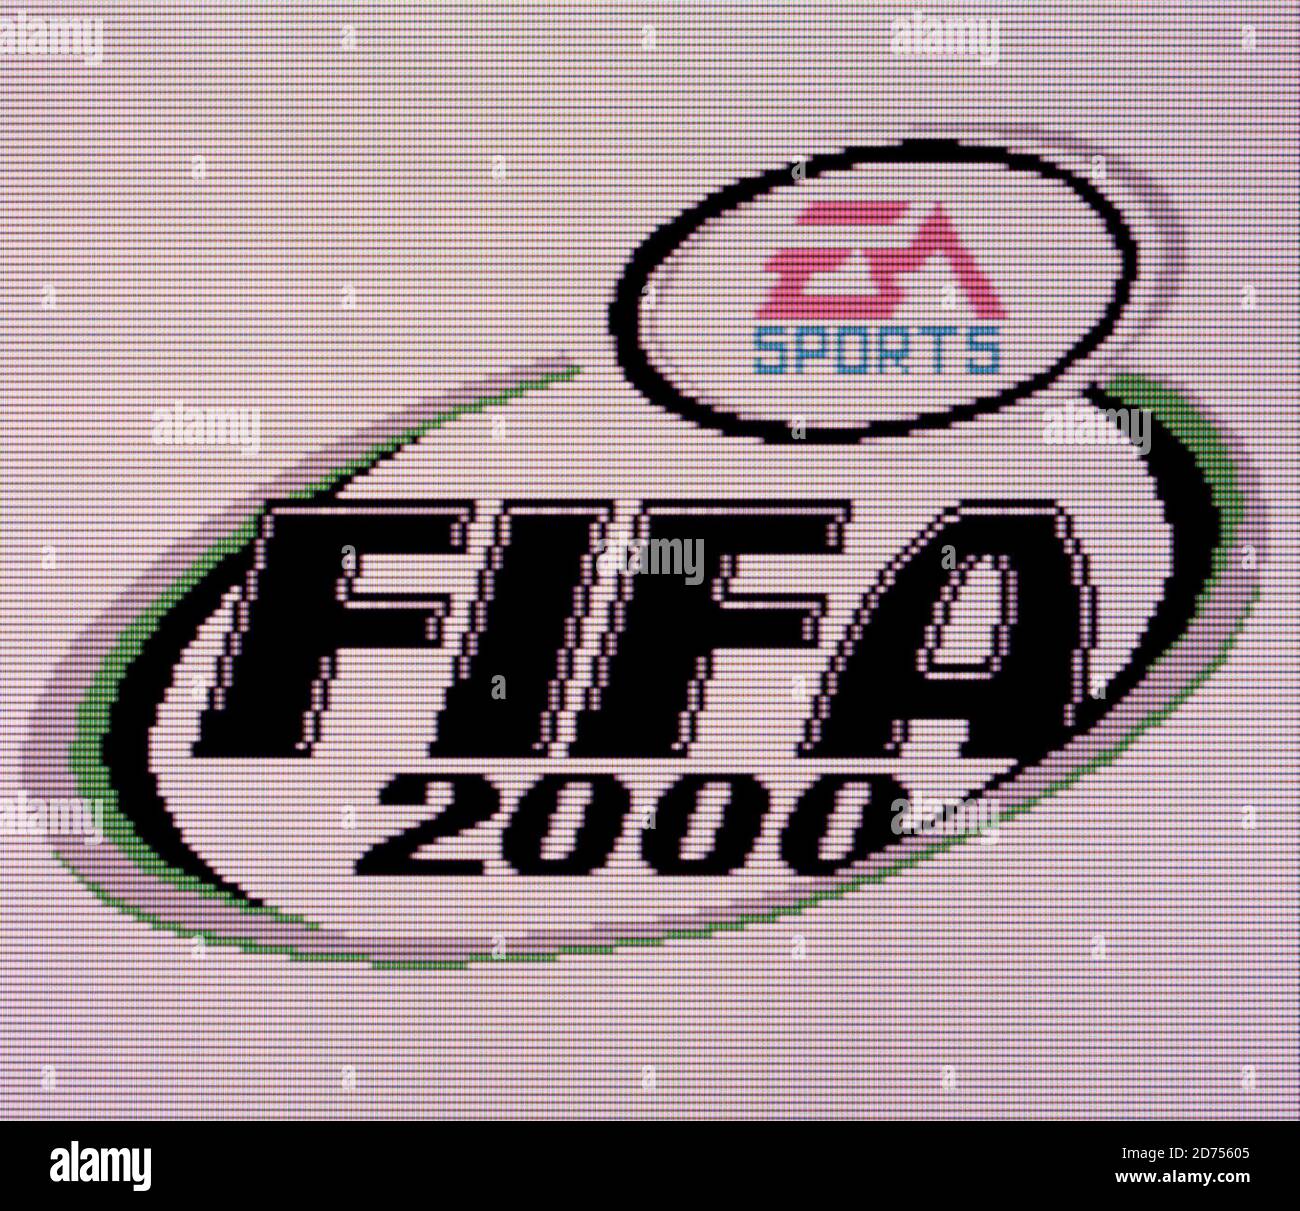  FIFA 2000 : Nintendo Game Boy Color: Video Games